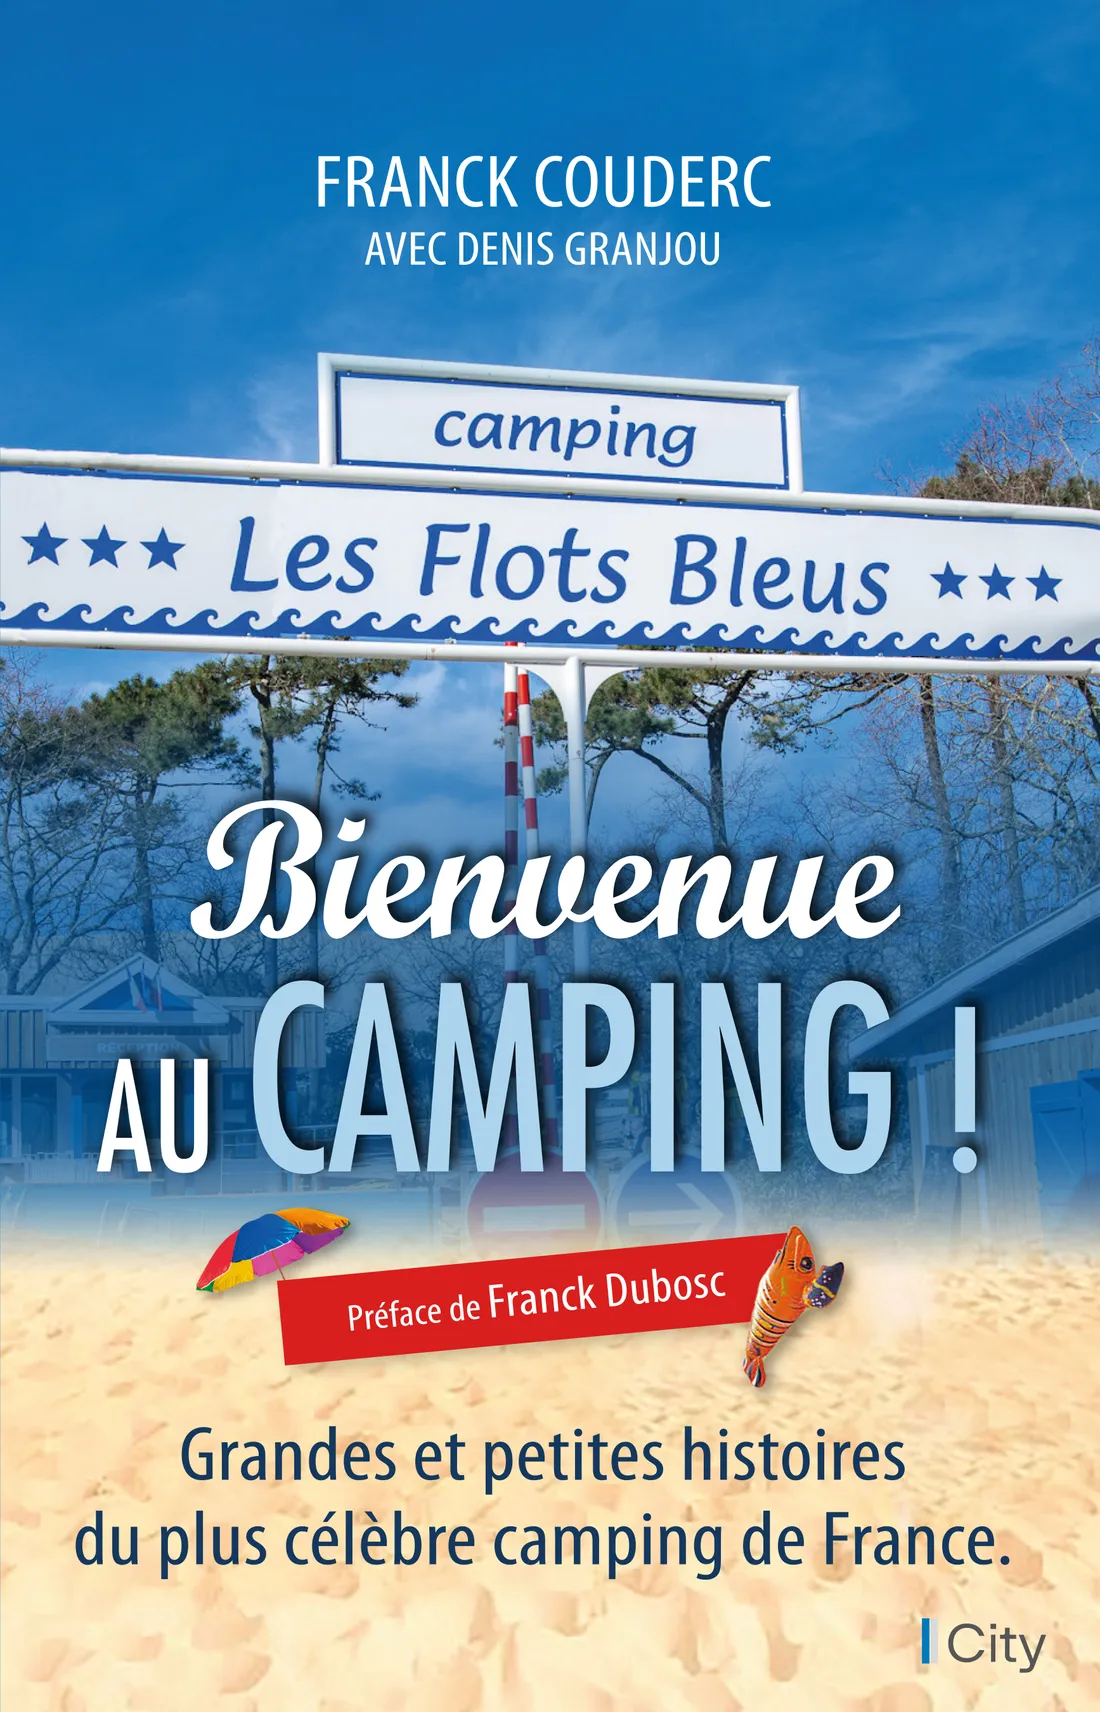 Le livre "Bienvenue au camping!" sortira ce mercredi 5 avril